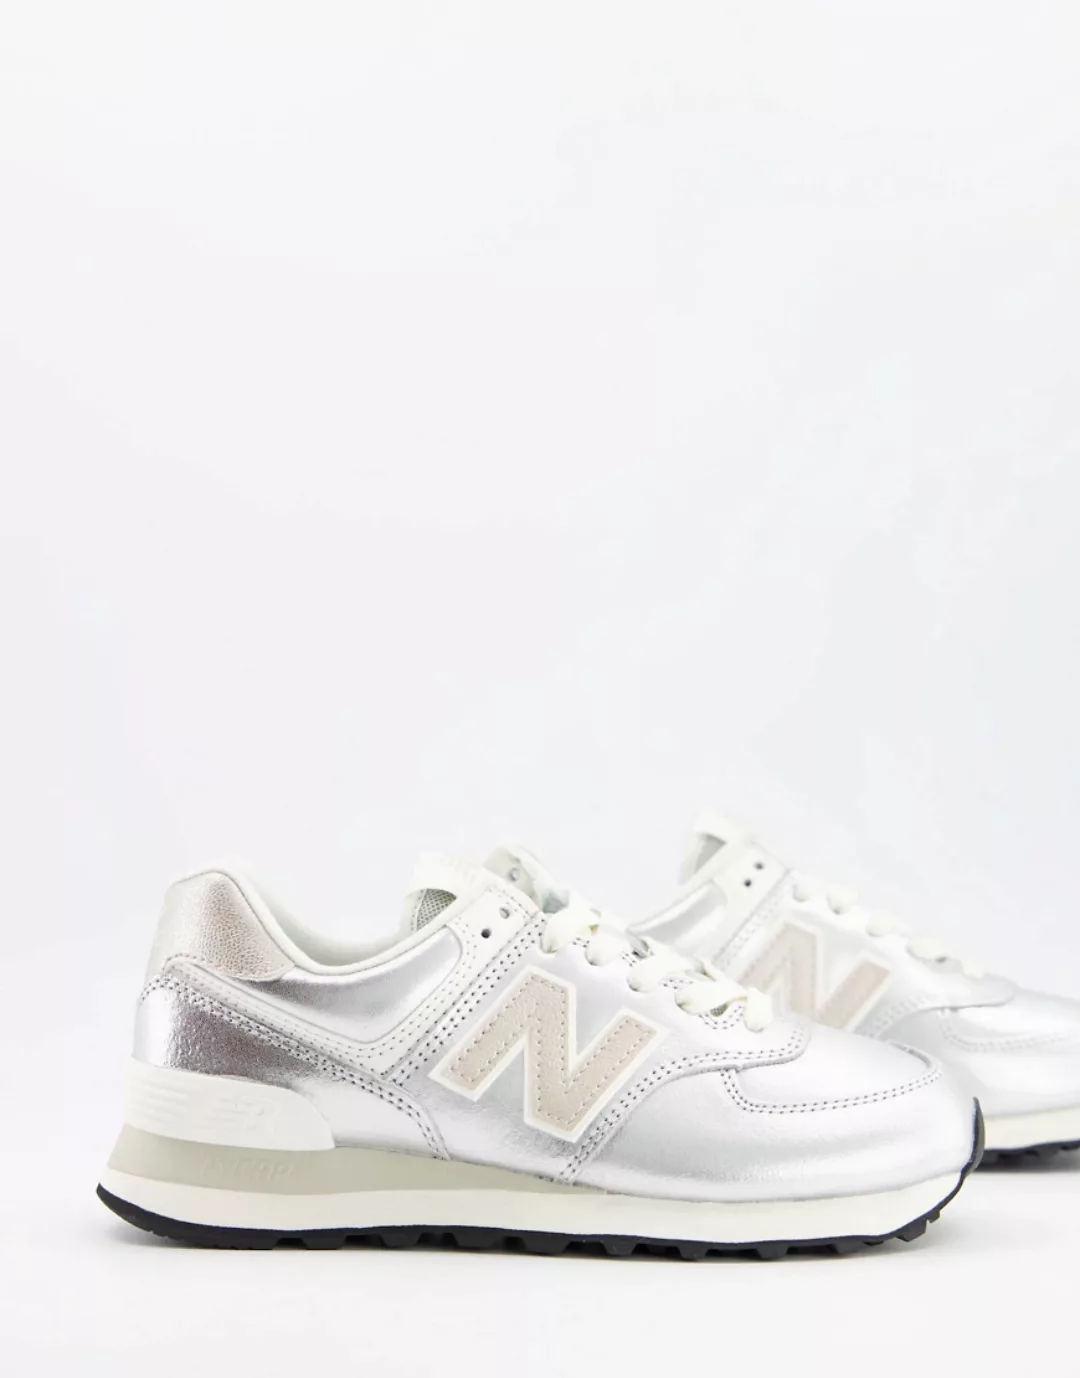 NEW BALANCE Schuhe Damen Silber Misto günstig online kaufen